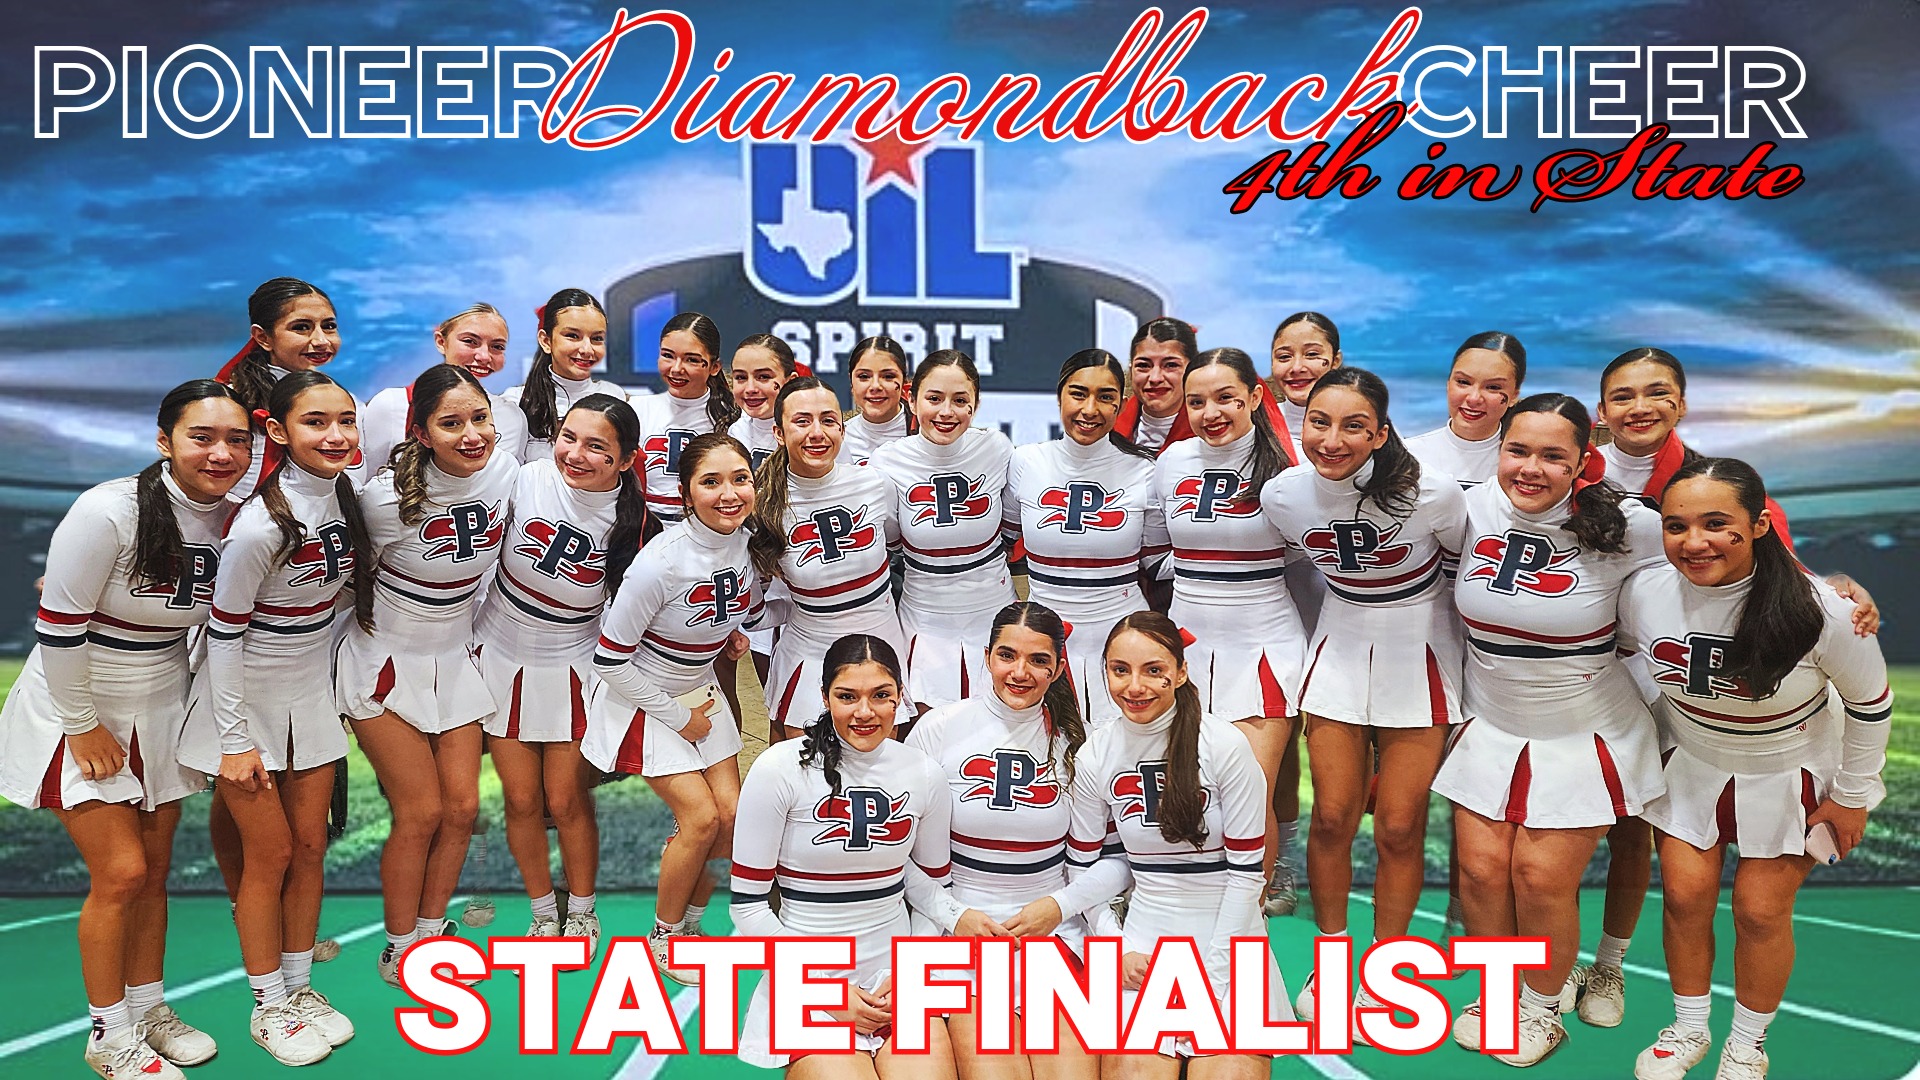 Slide 2 - Pioneer Diamondback Cheerleaders 4th in the State